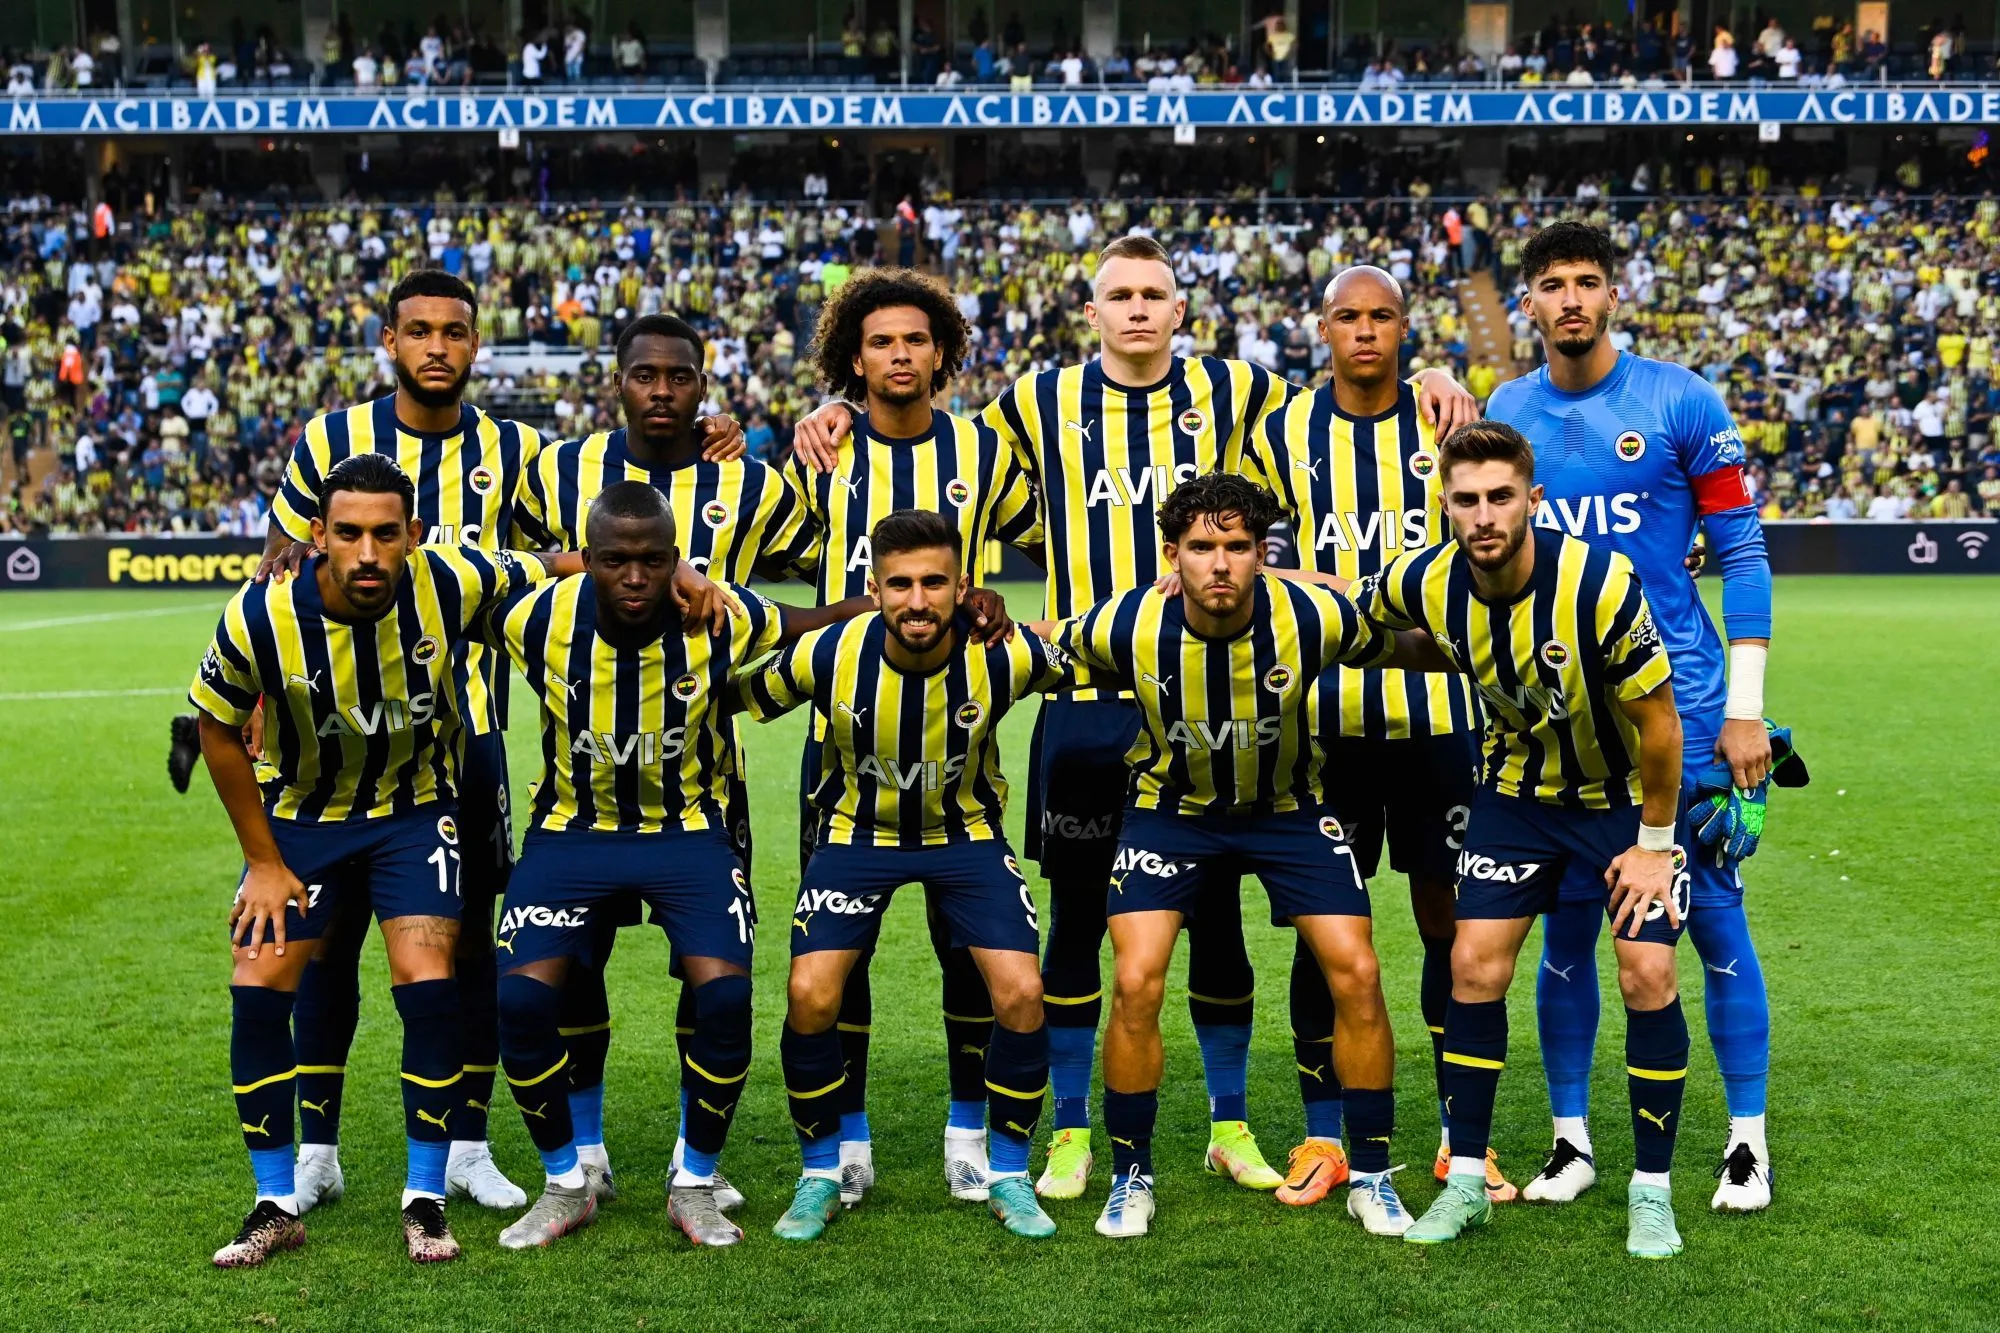 Pronostic Austria Vienne Fenerbahçe : Analyse, cotes et prono du barrage aller de Ligue Europa